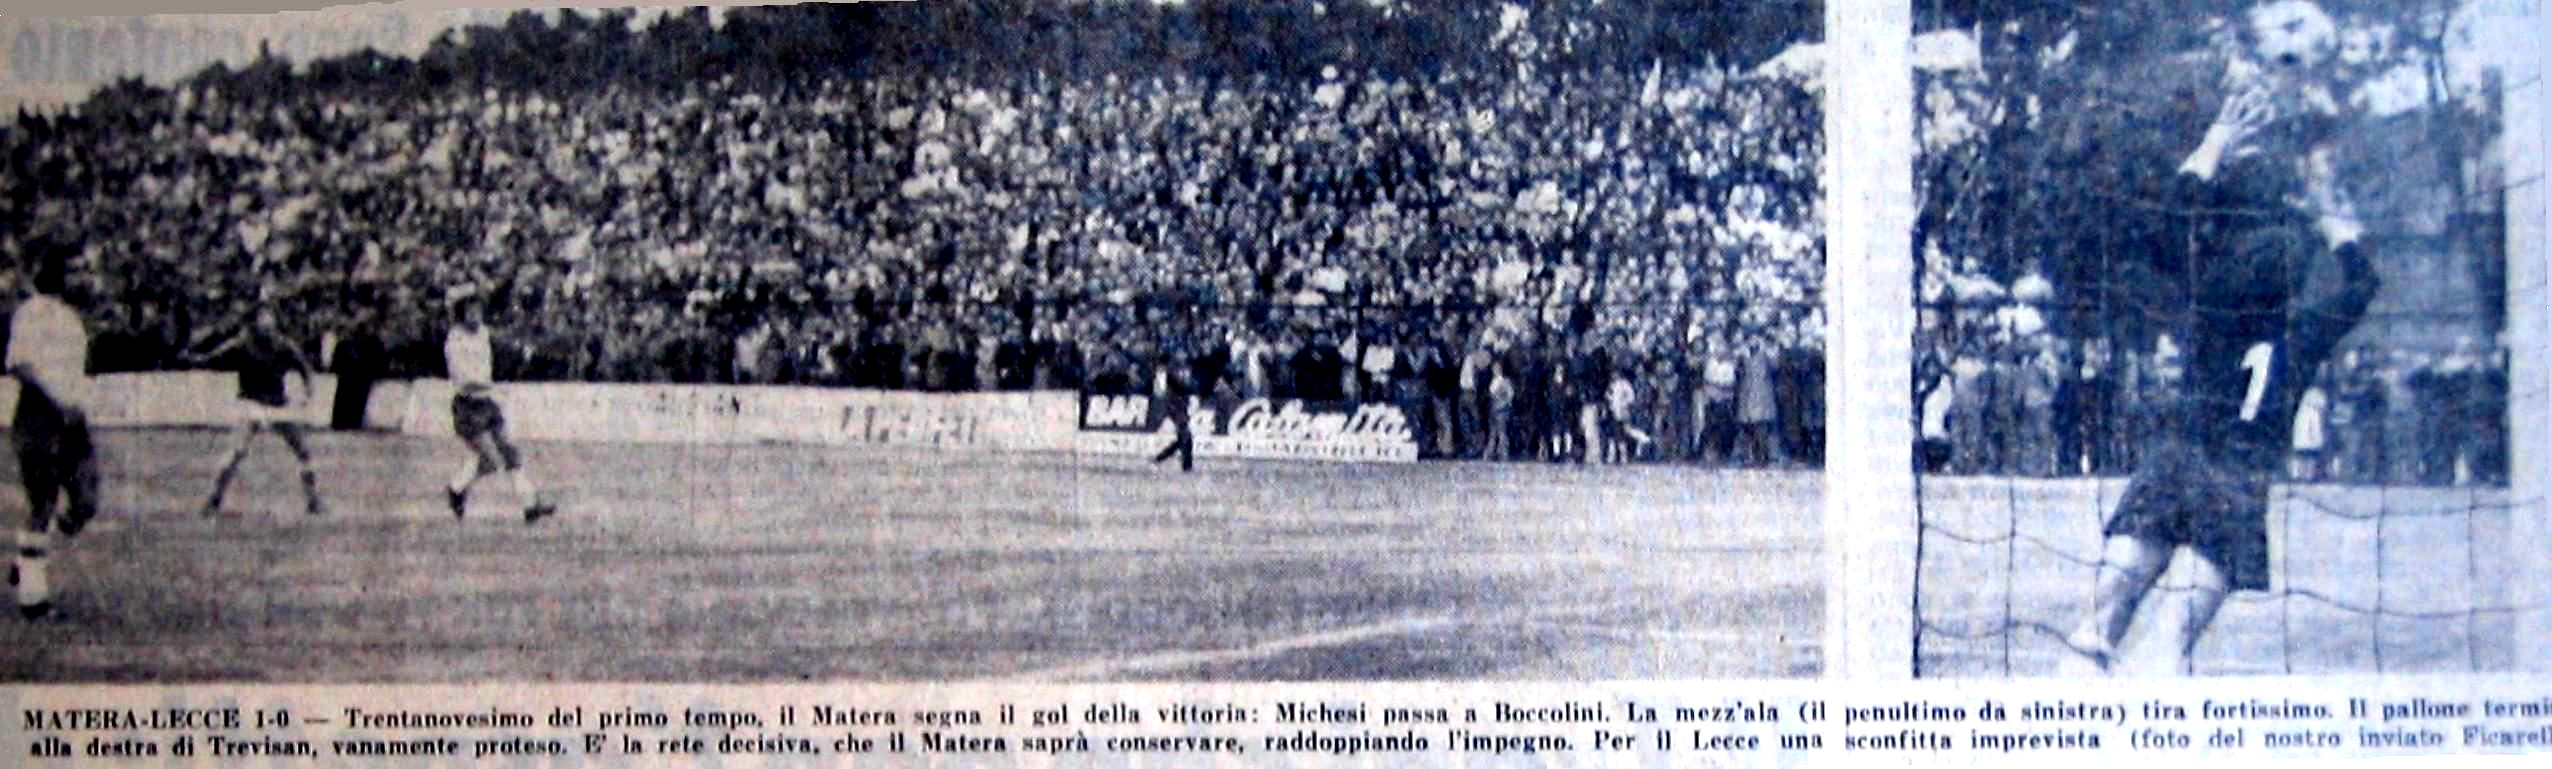 boccolini gol matera-lecce 1972-73